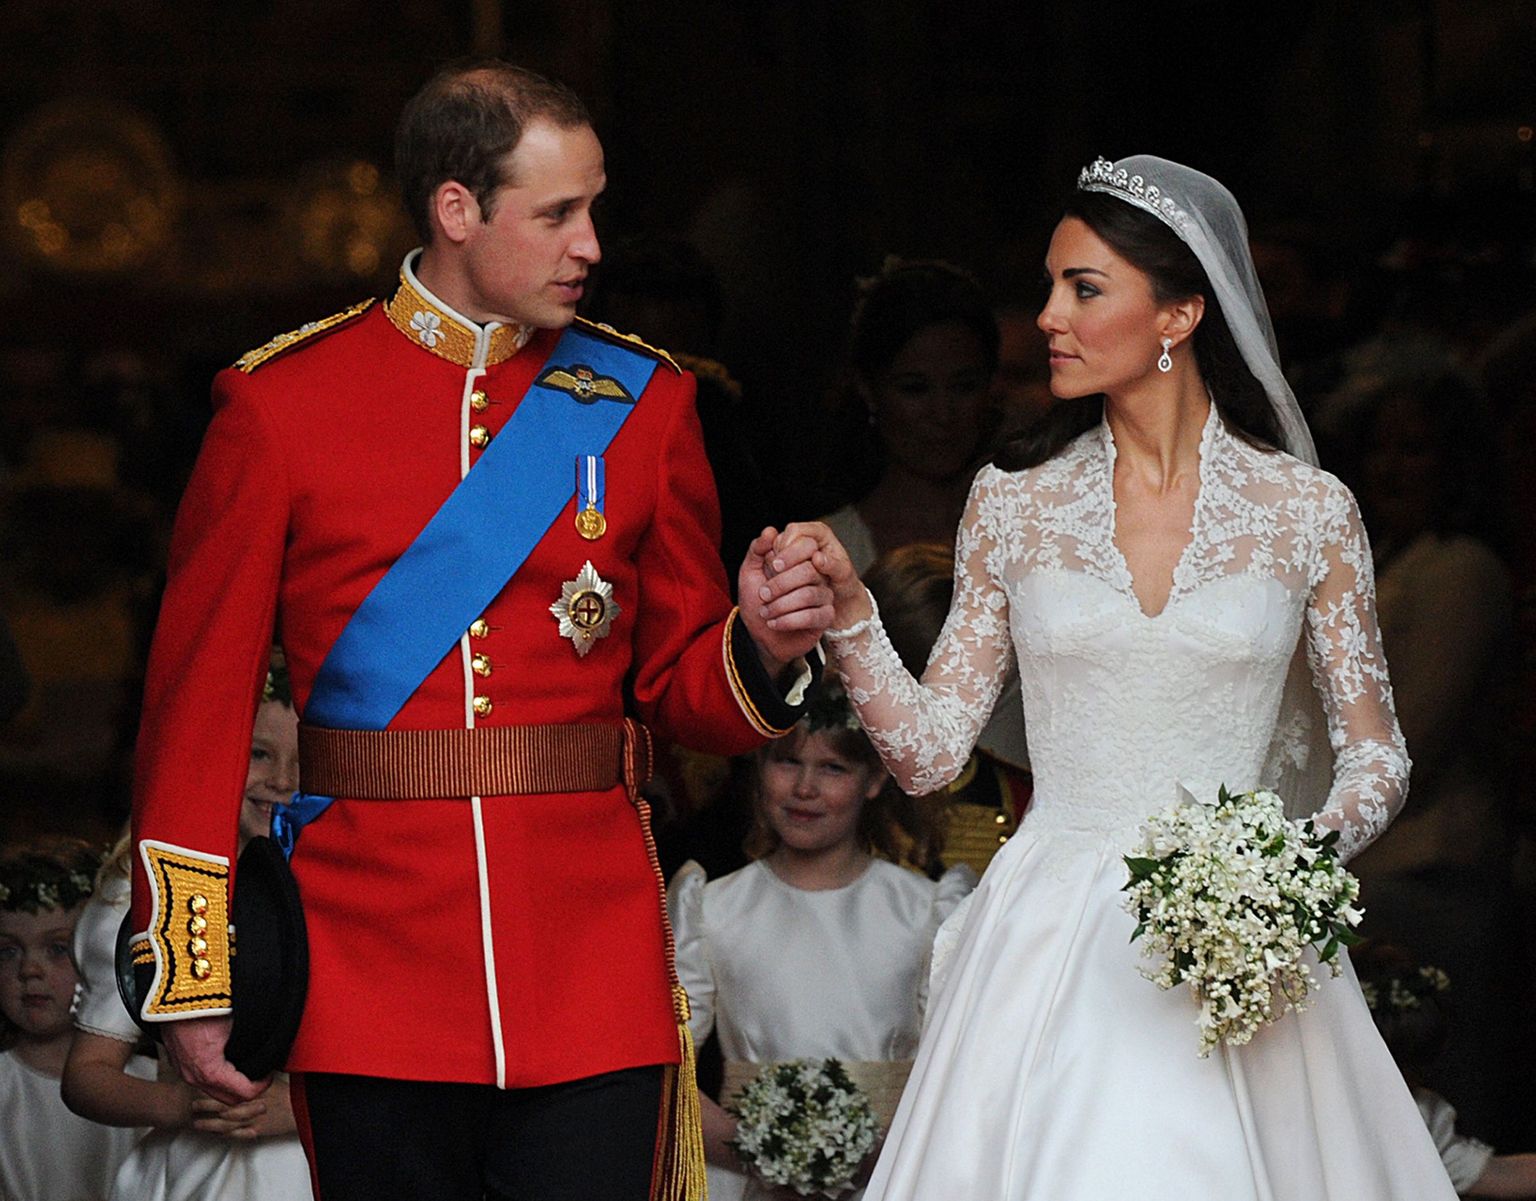 Cambridge'i hertsog William ja hertsoginna Kate abiellusid 2011. aastal.